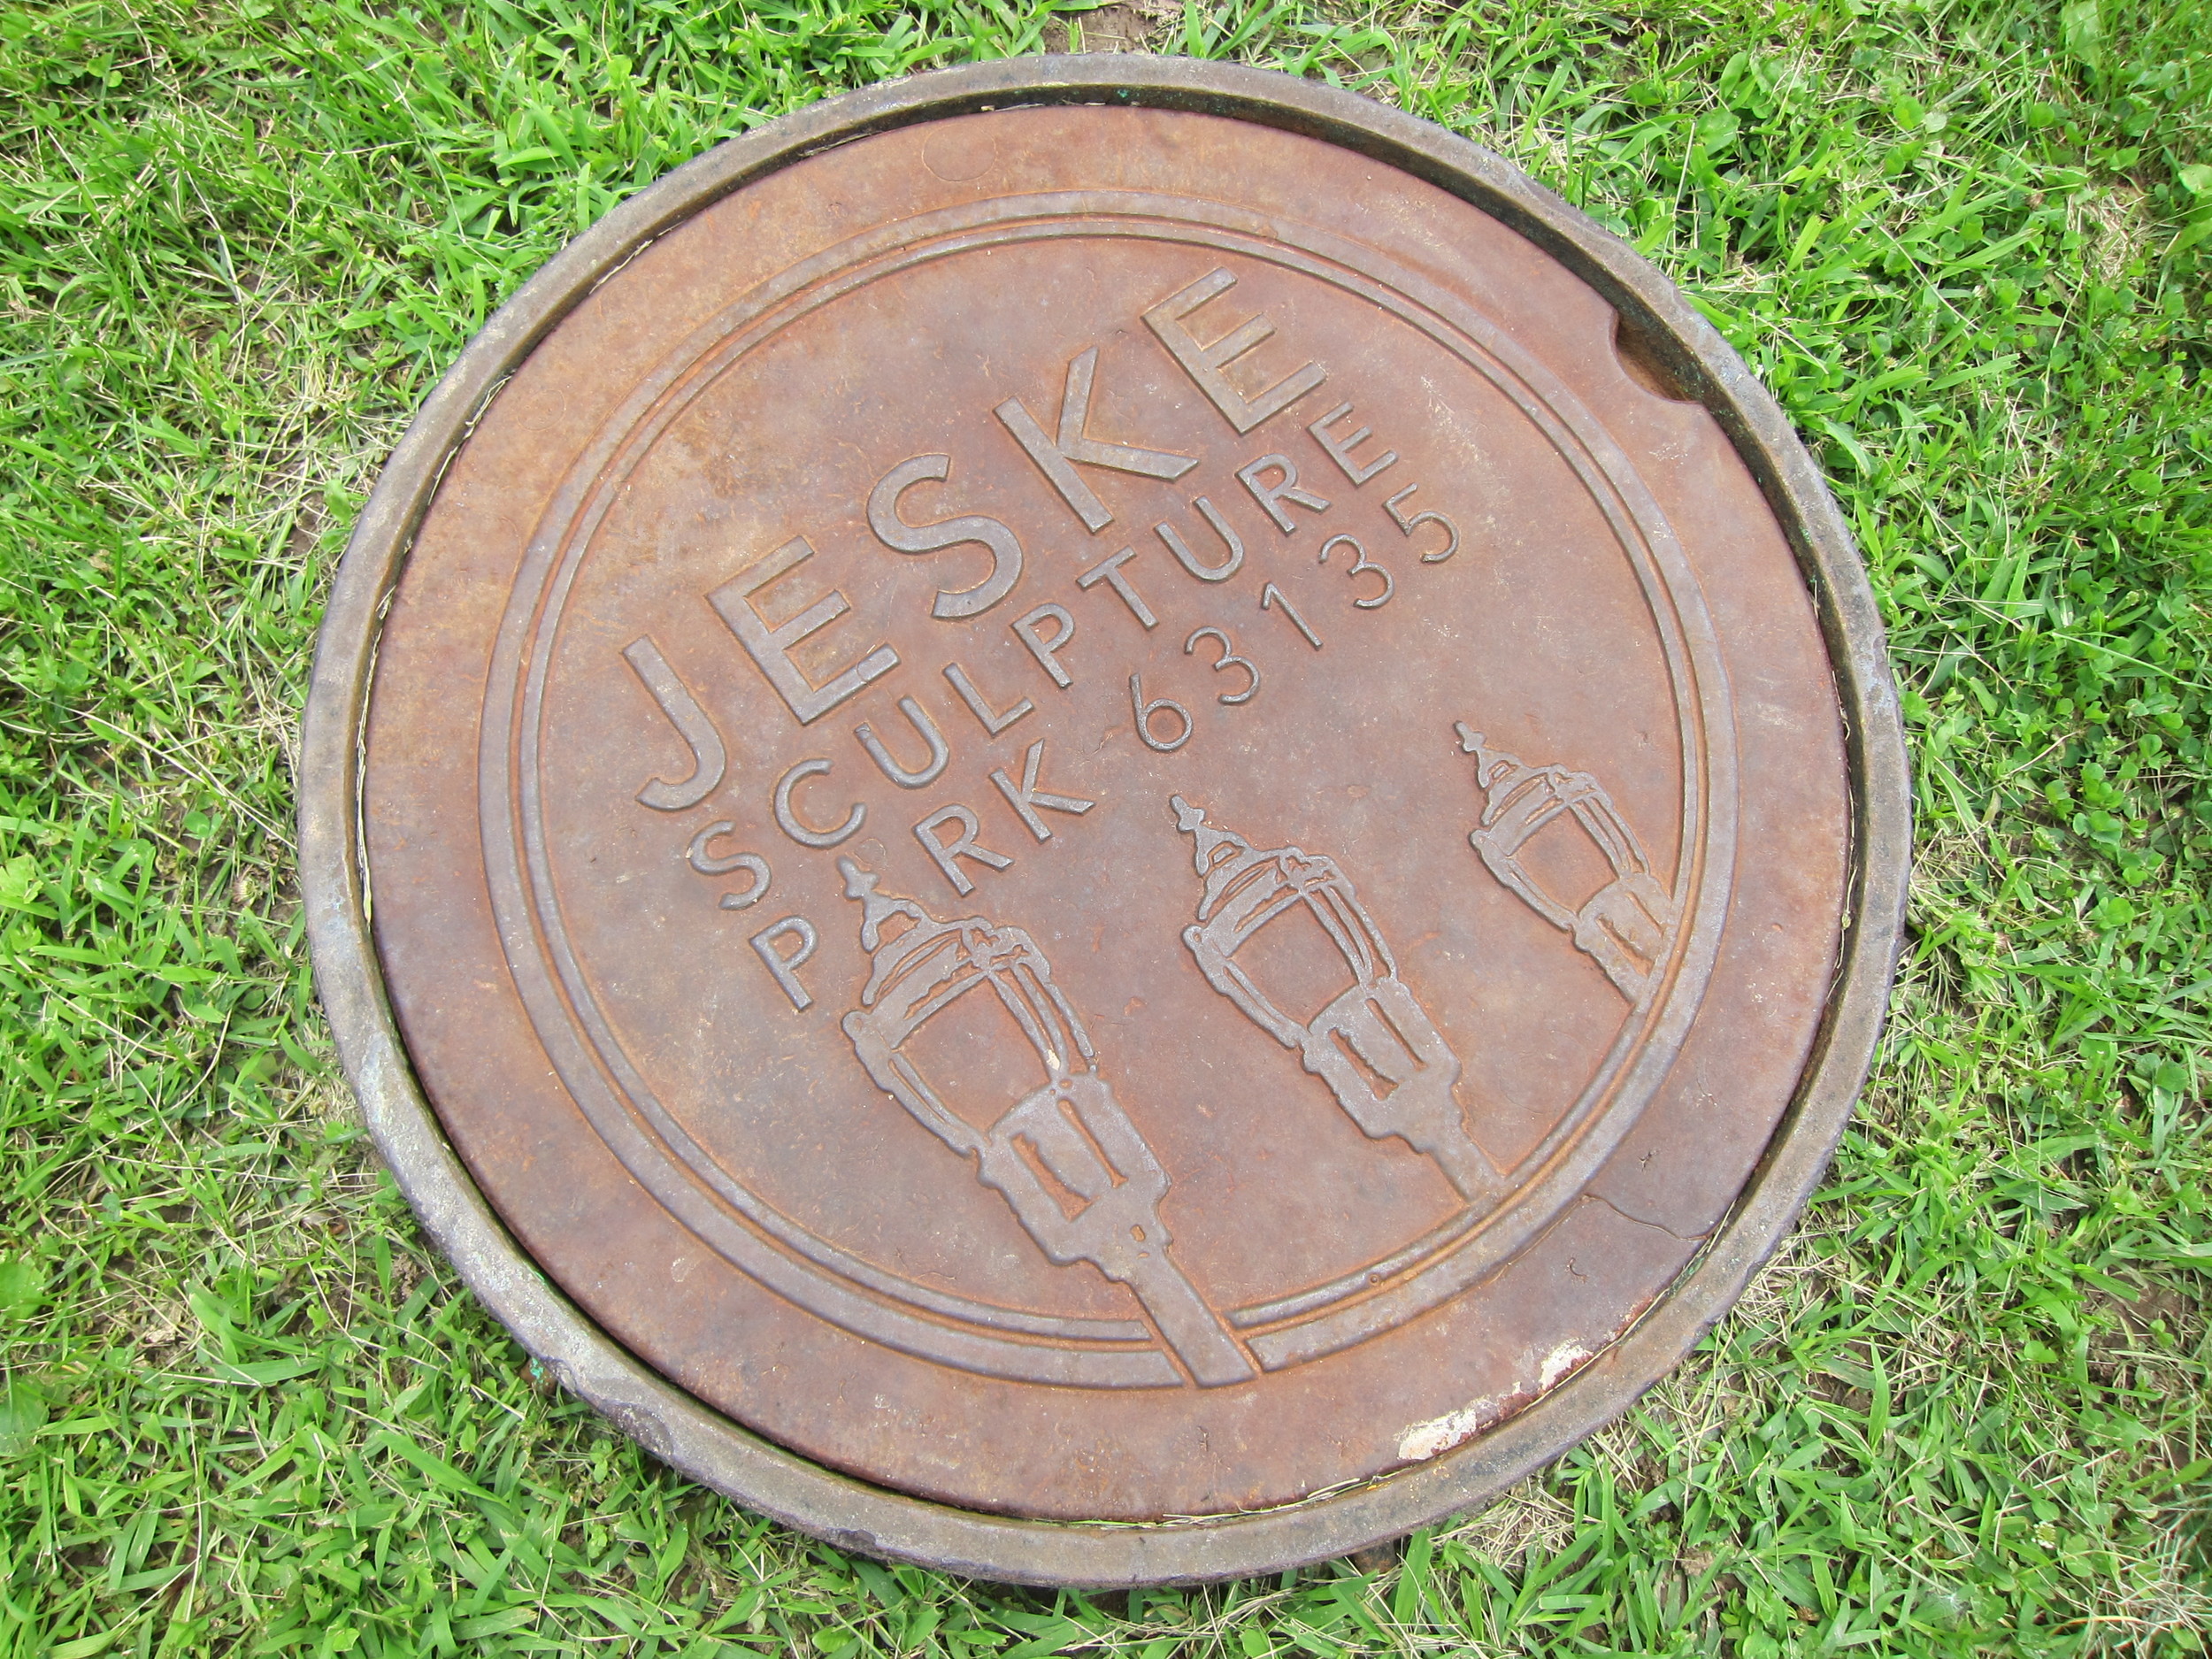 Jeske Sculpture Park, Creative Infrastructure